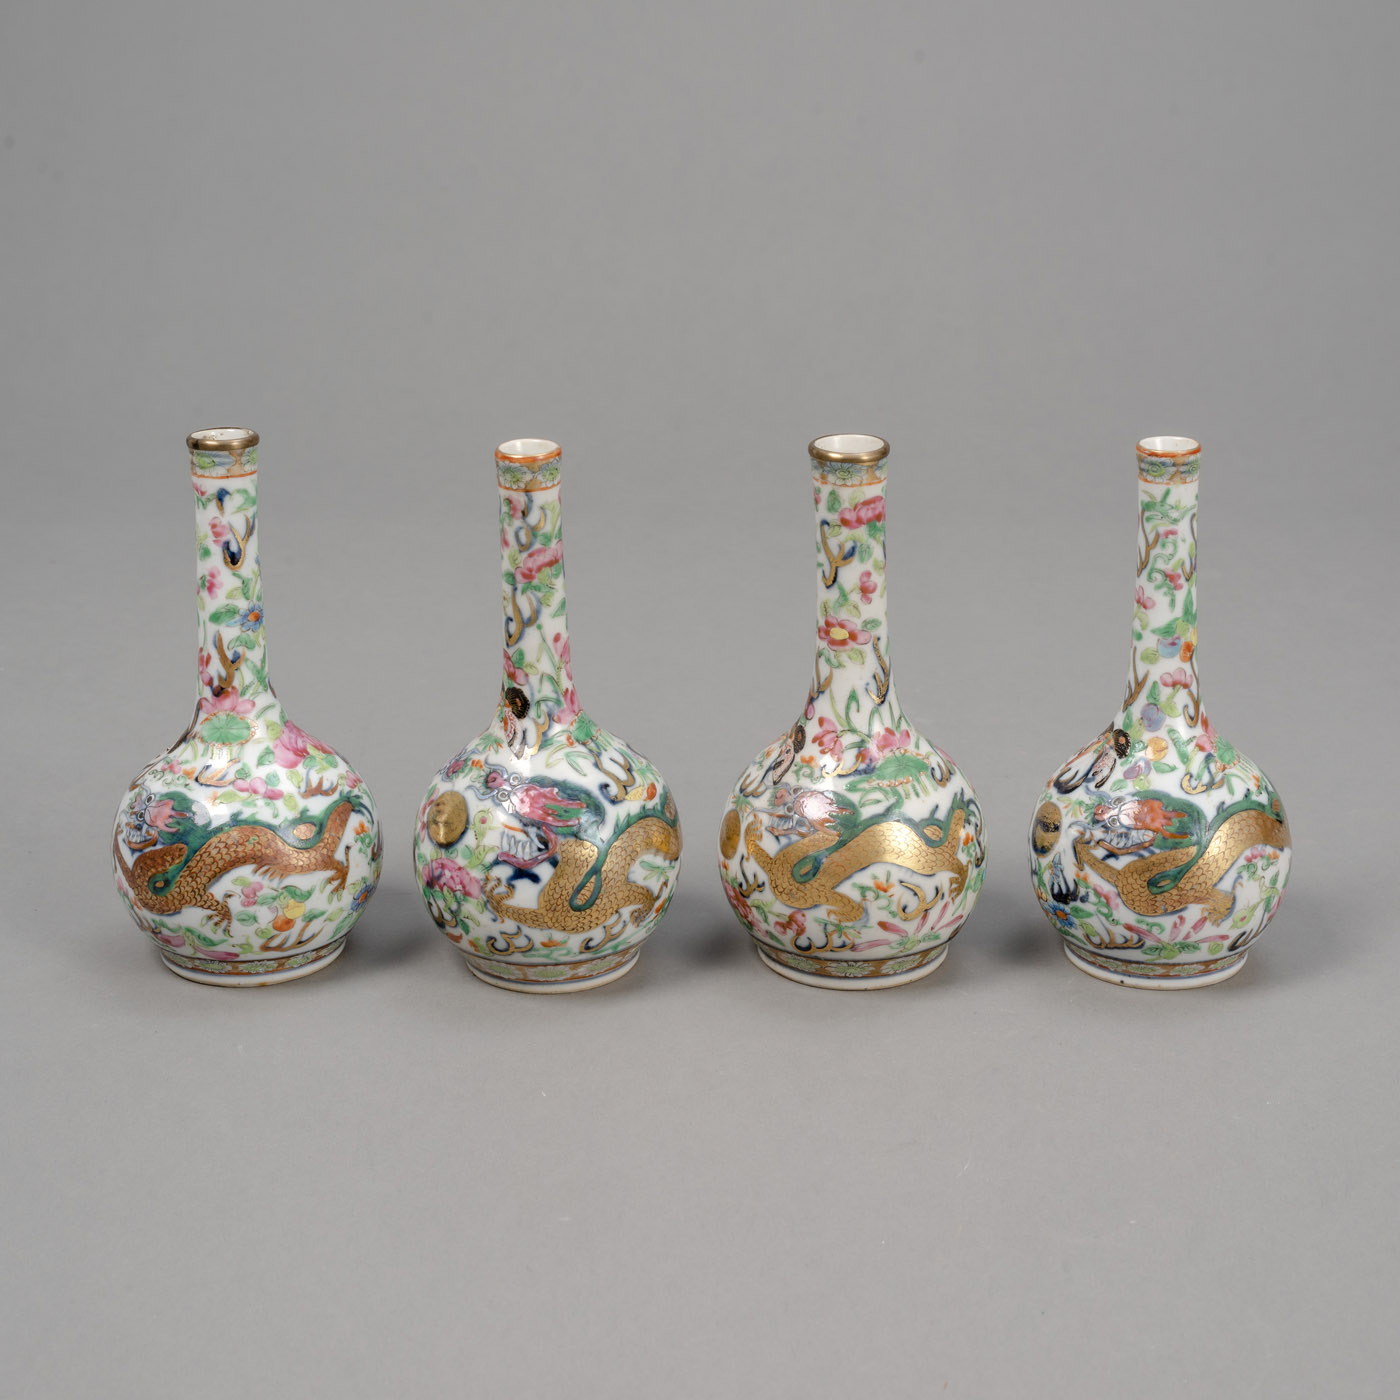 <b>Vier kleine Flaschenvasen aus Porzellan mit 'Famille rose'-Drachendekor</b>